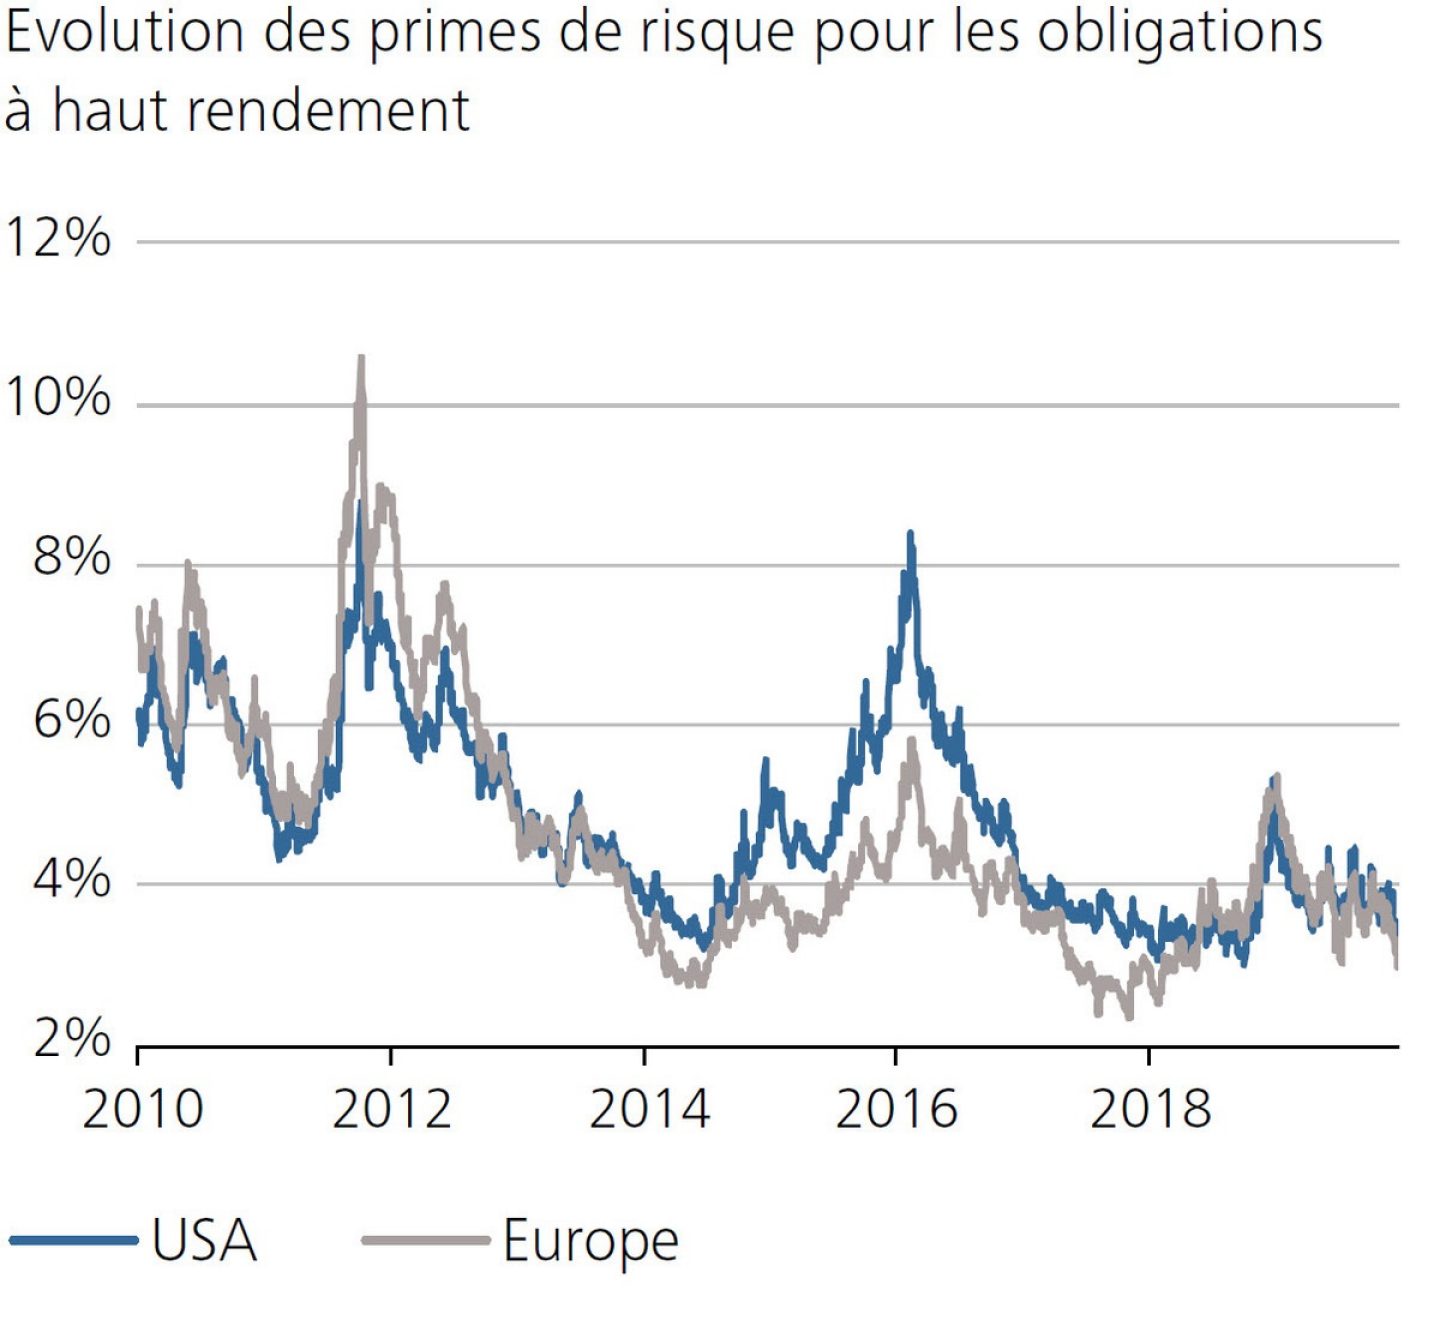 Evolution des primes de risque pour les obligations à haut rendement